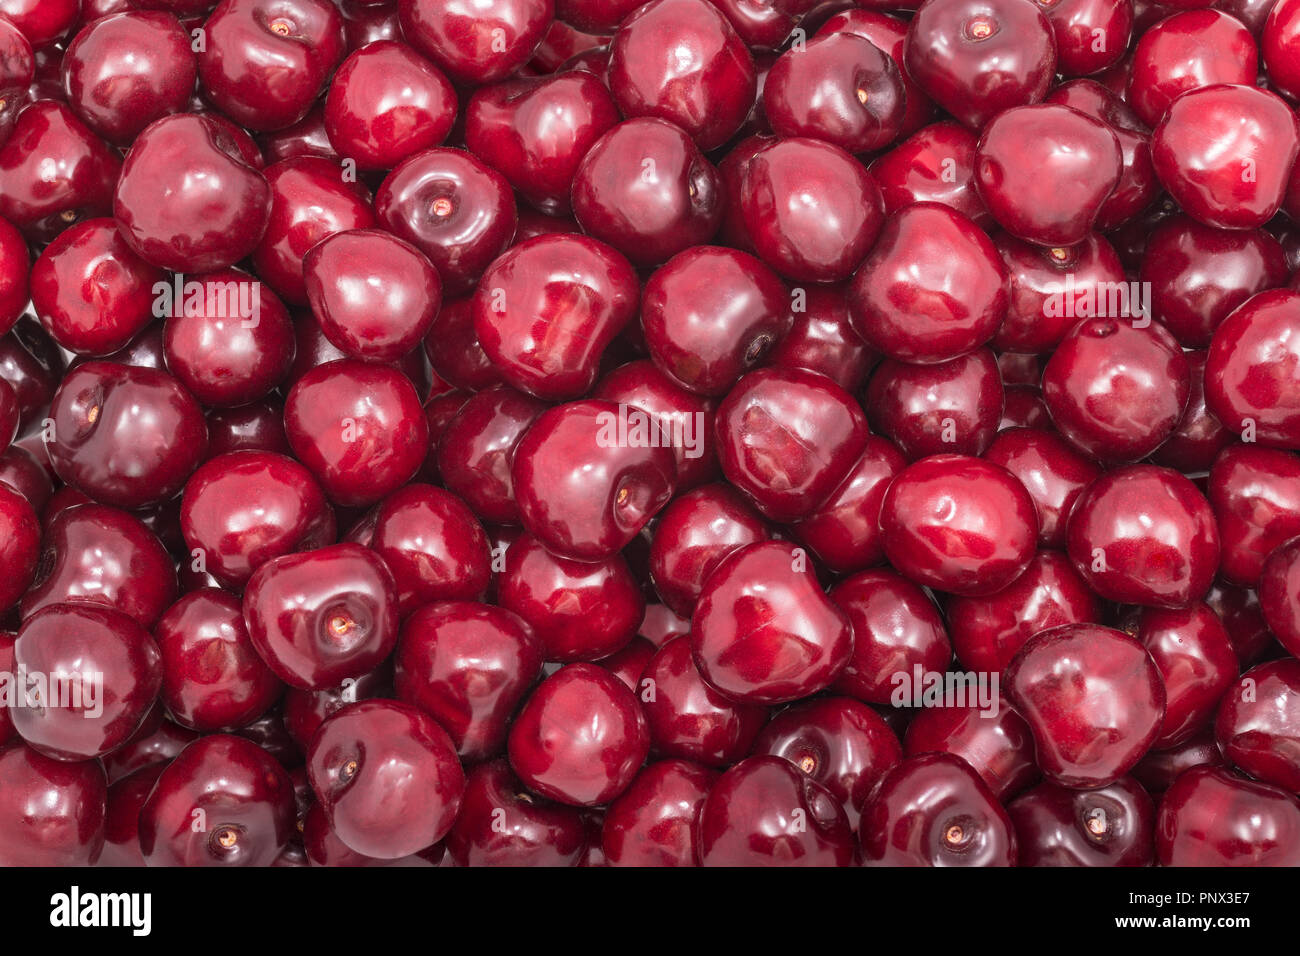 Textur von frischen Kirsche Früchte. Prunus avium. Rot fruchtig Hintergrund. Stapel der Süße reife Kirschen voller Vitamine, Antioxidantien und einem köstlichen Saft. Stockfoto